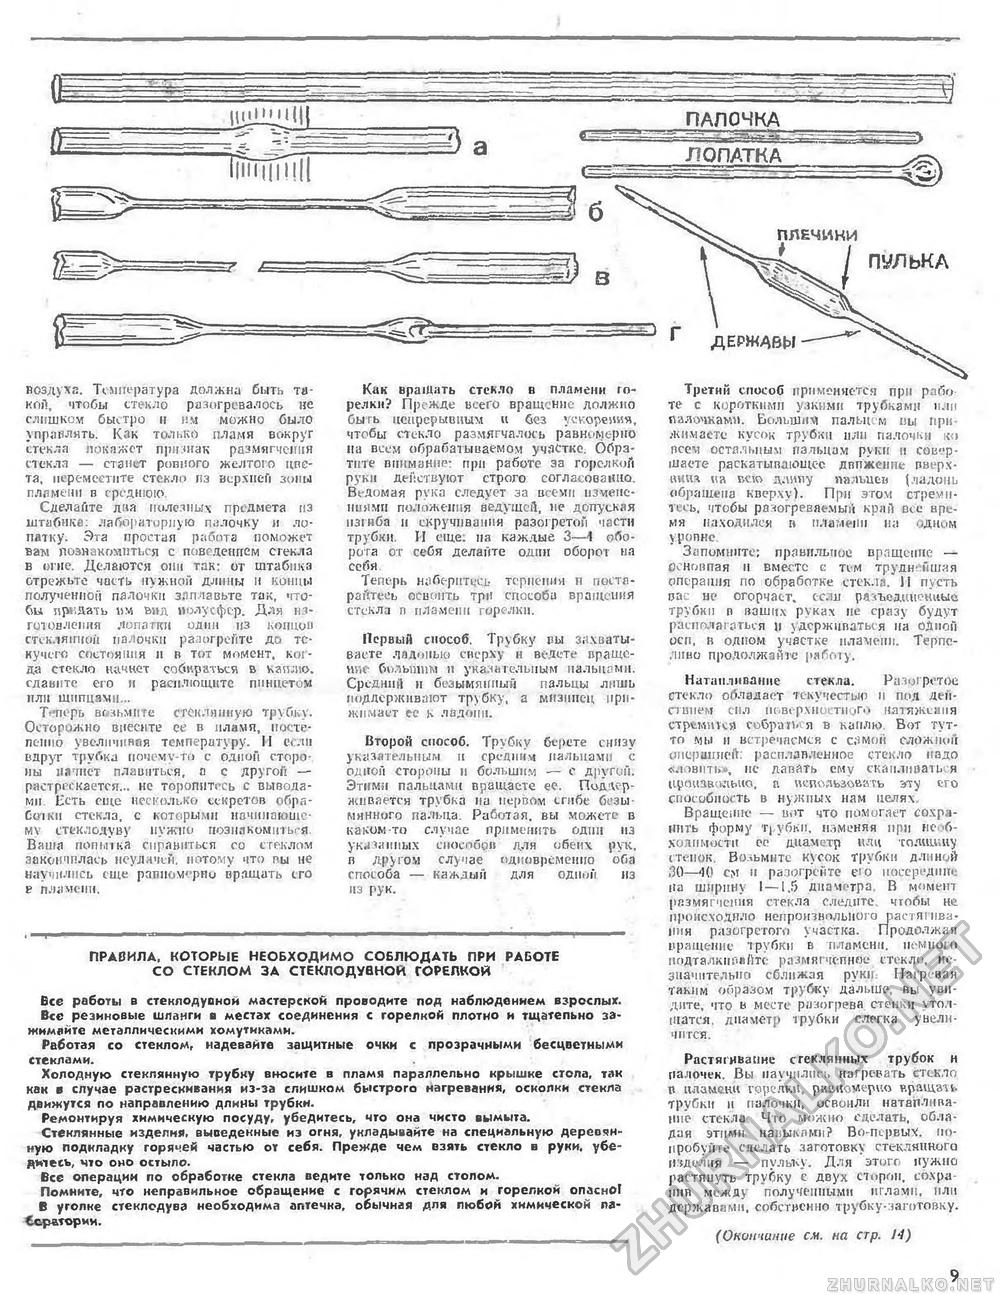 Юный техник - для умелых рук 1977-10, страница 9